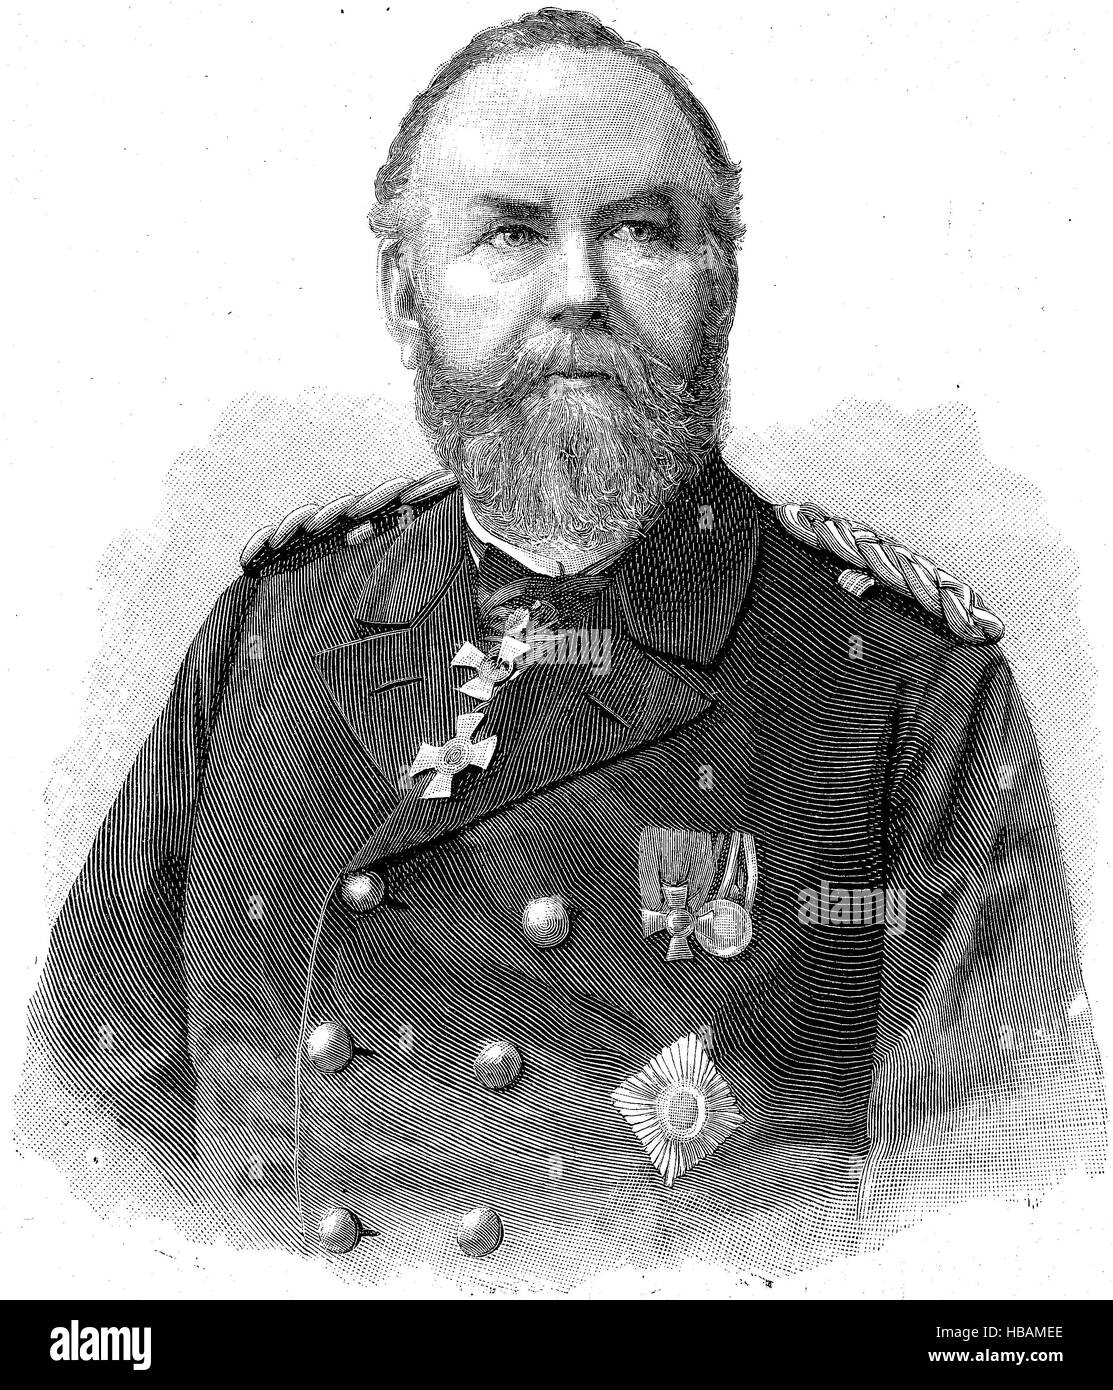 Vize-Admiral von der Goltz, Admiral der Kriegsmarine, historische Darstellung aus dem Jahr 1880 Stockfoto